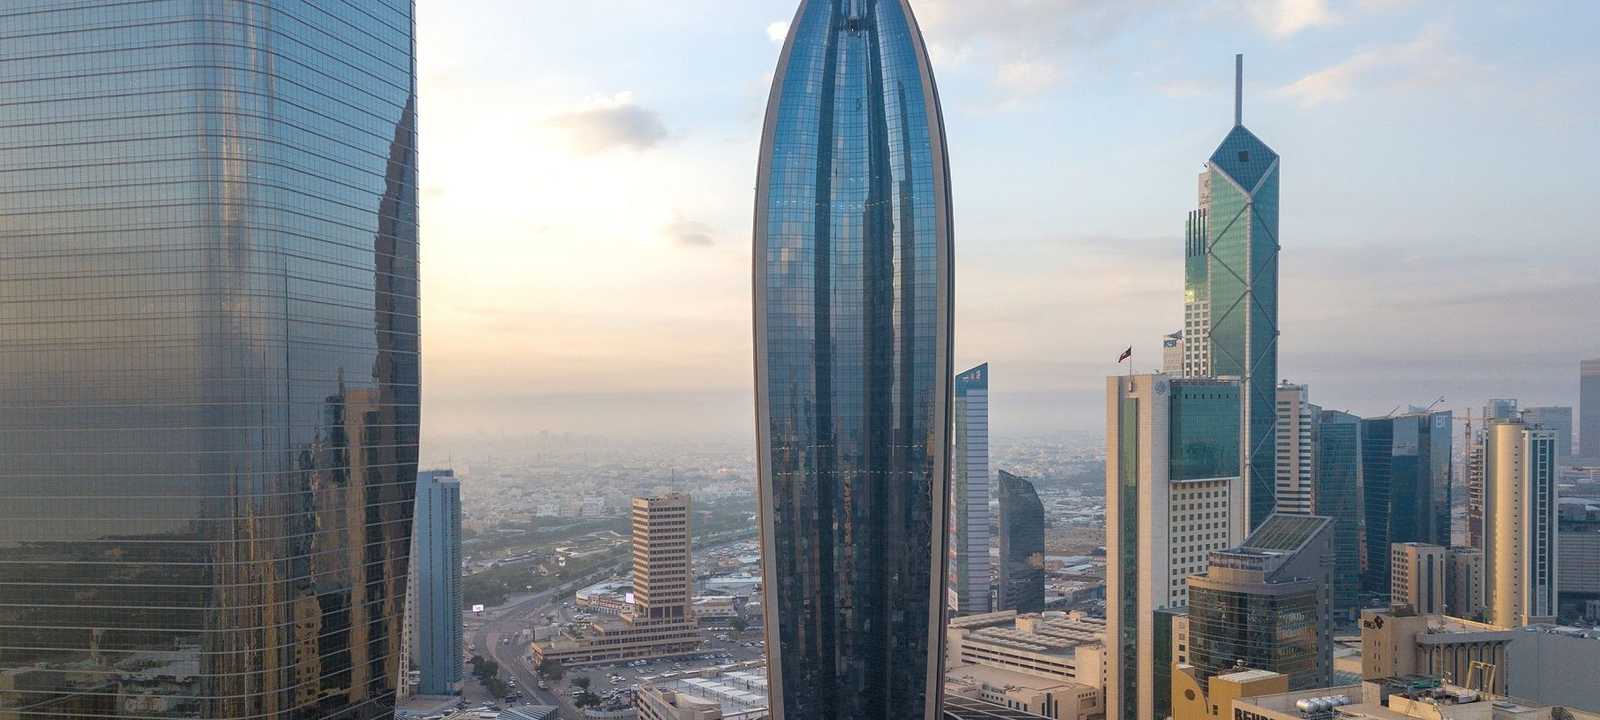 المقر الرئيسي بنك الكويت الوطني